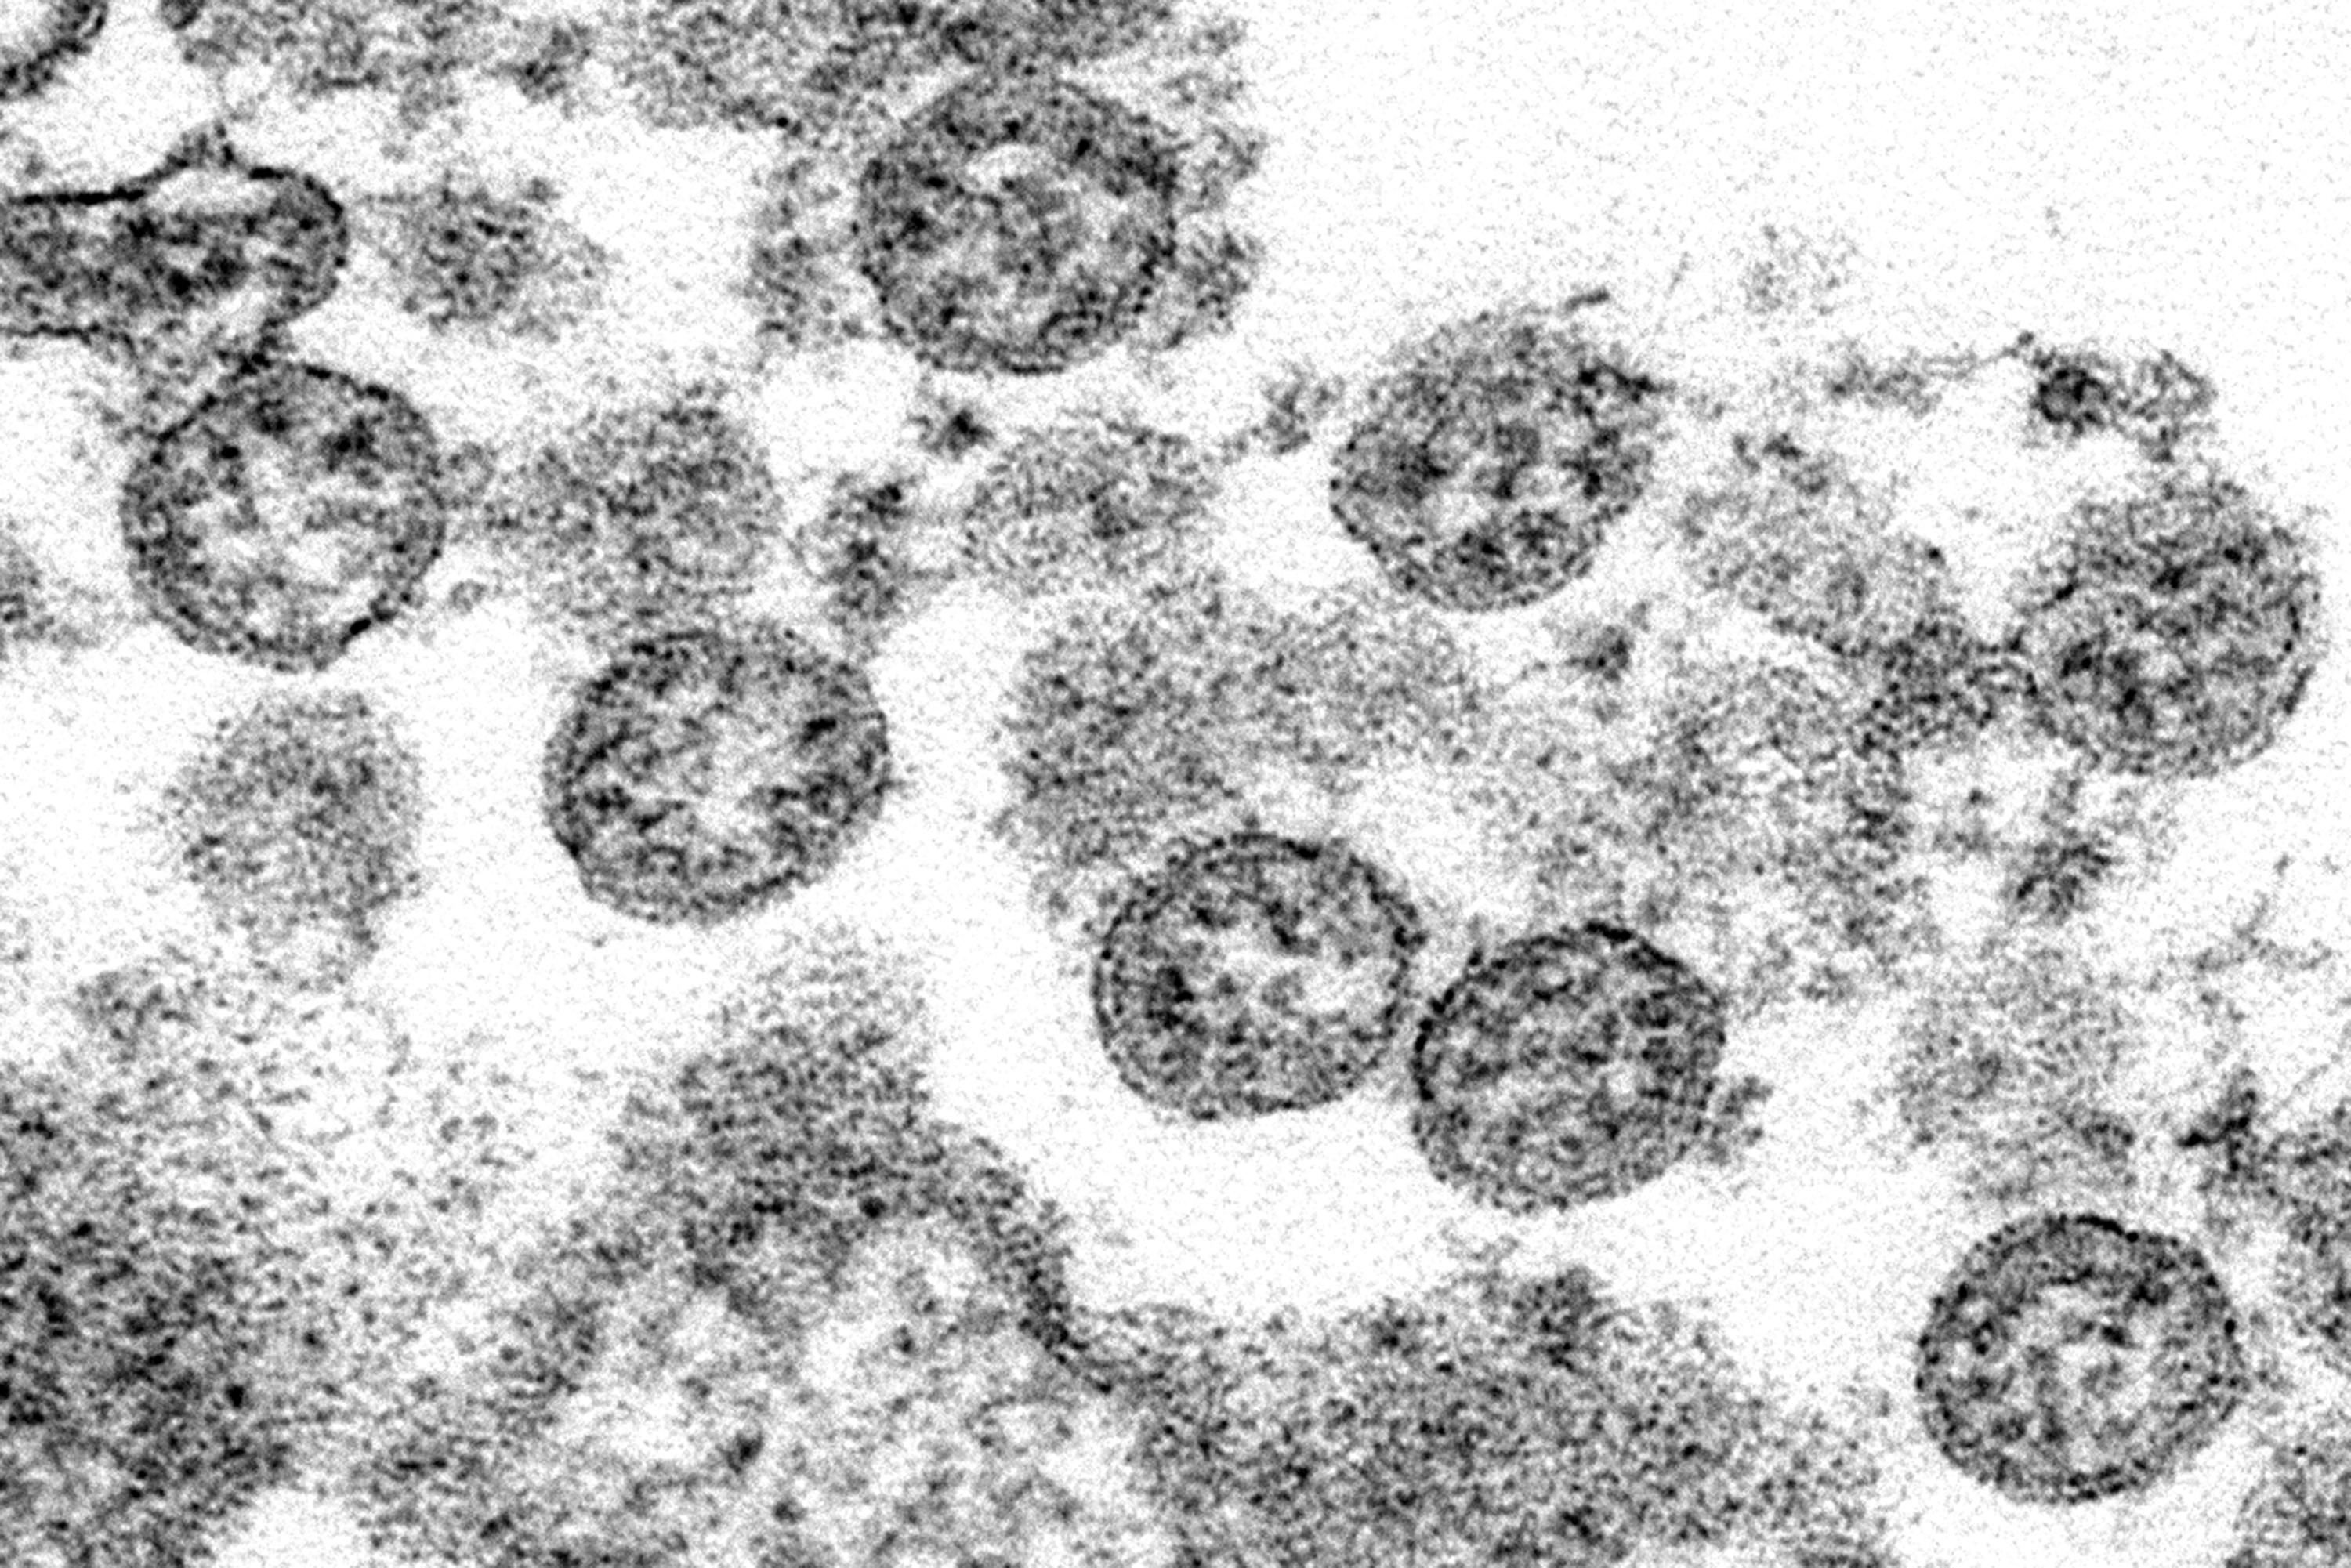 Un nuevo estudio muestra que el este de Asia se vio afectado por otra epidemia del virus Corona hace 20.000 años.